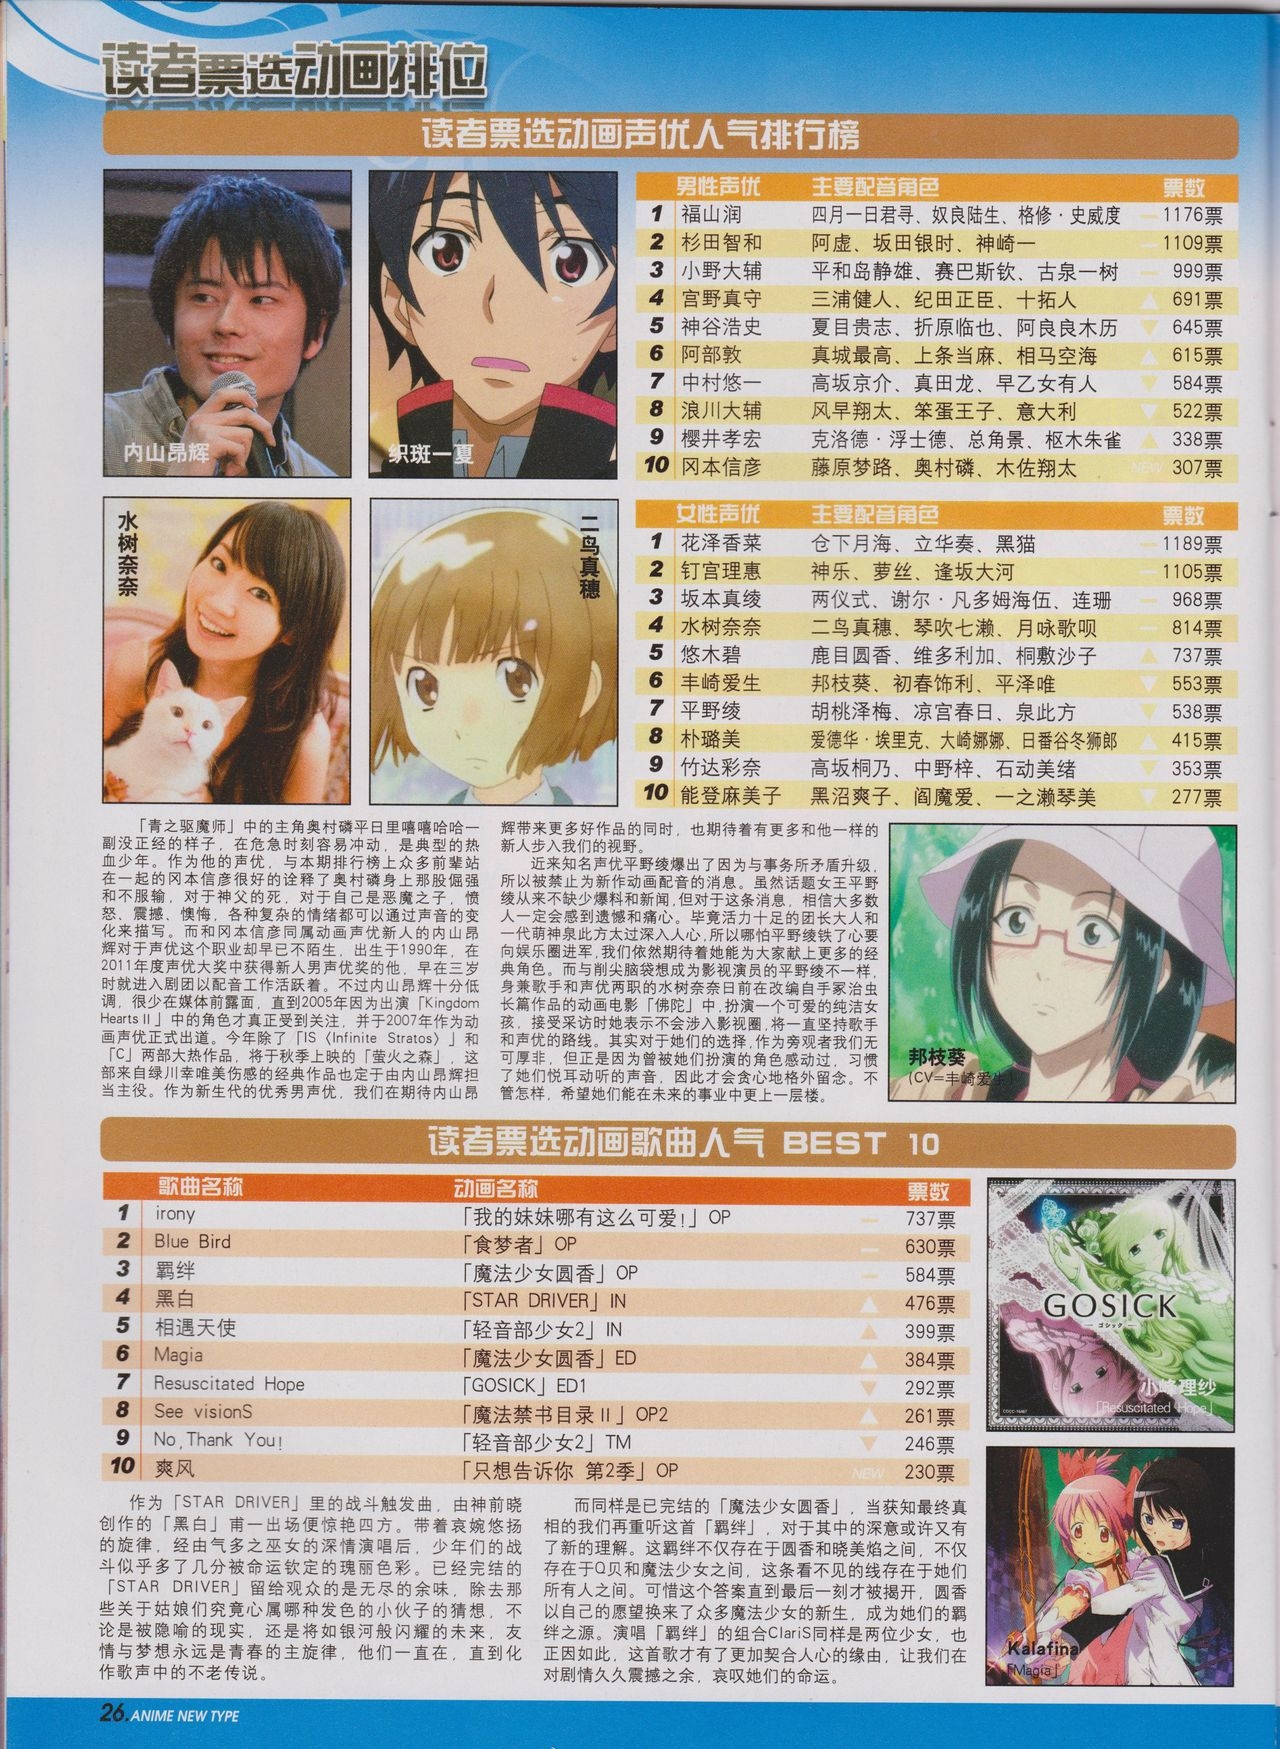 Anime New Type Vol.100 27